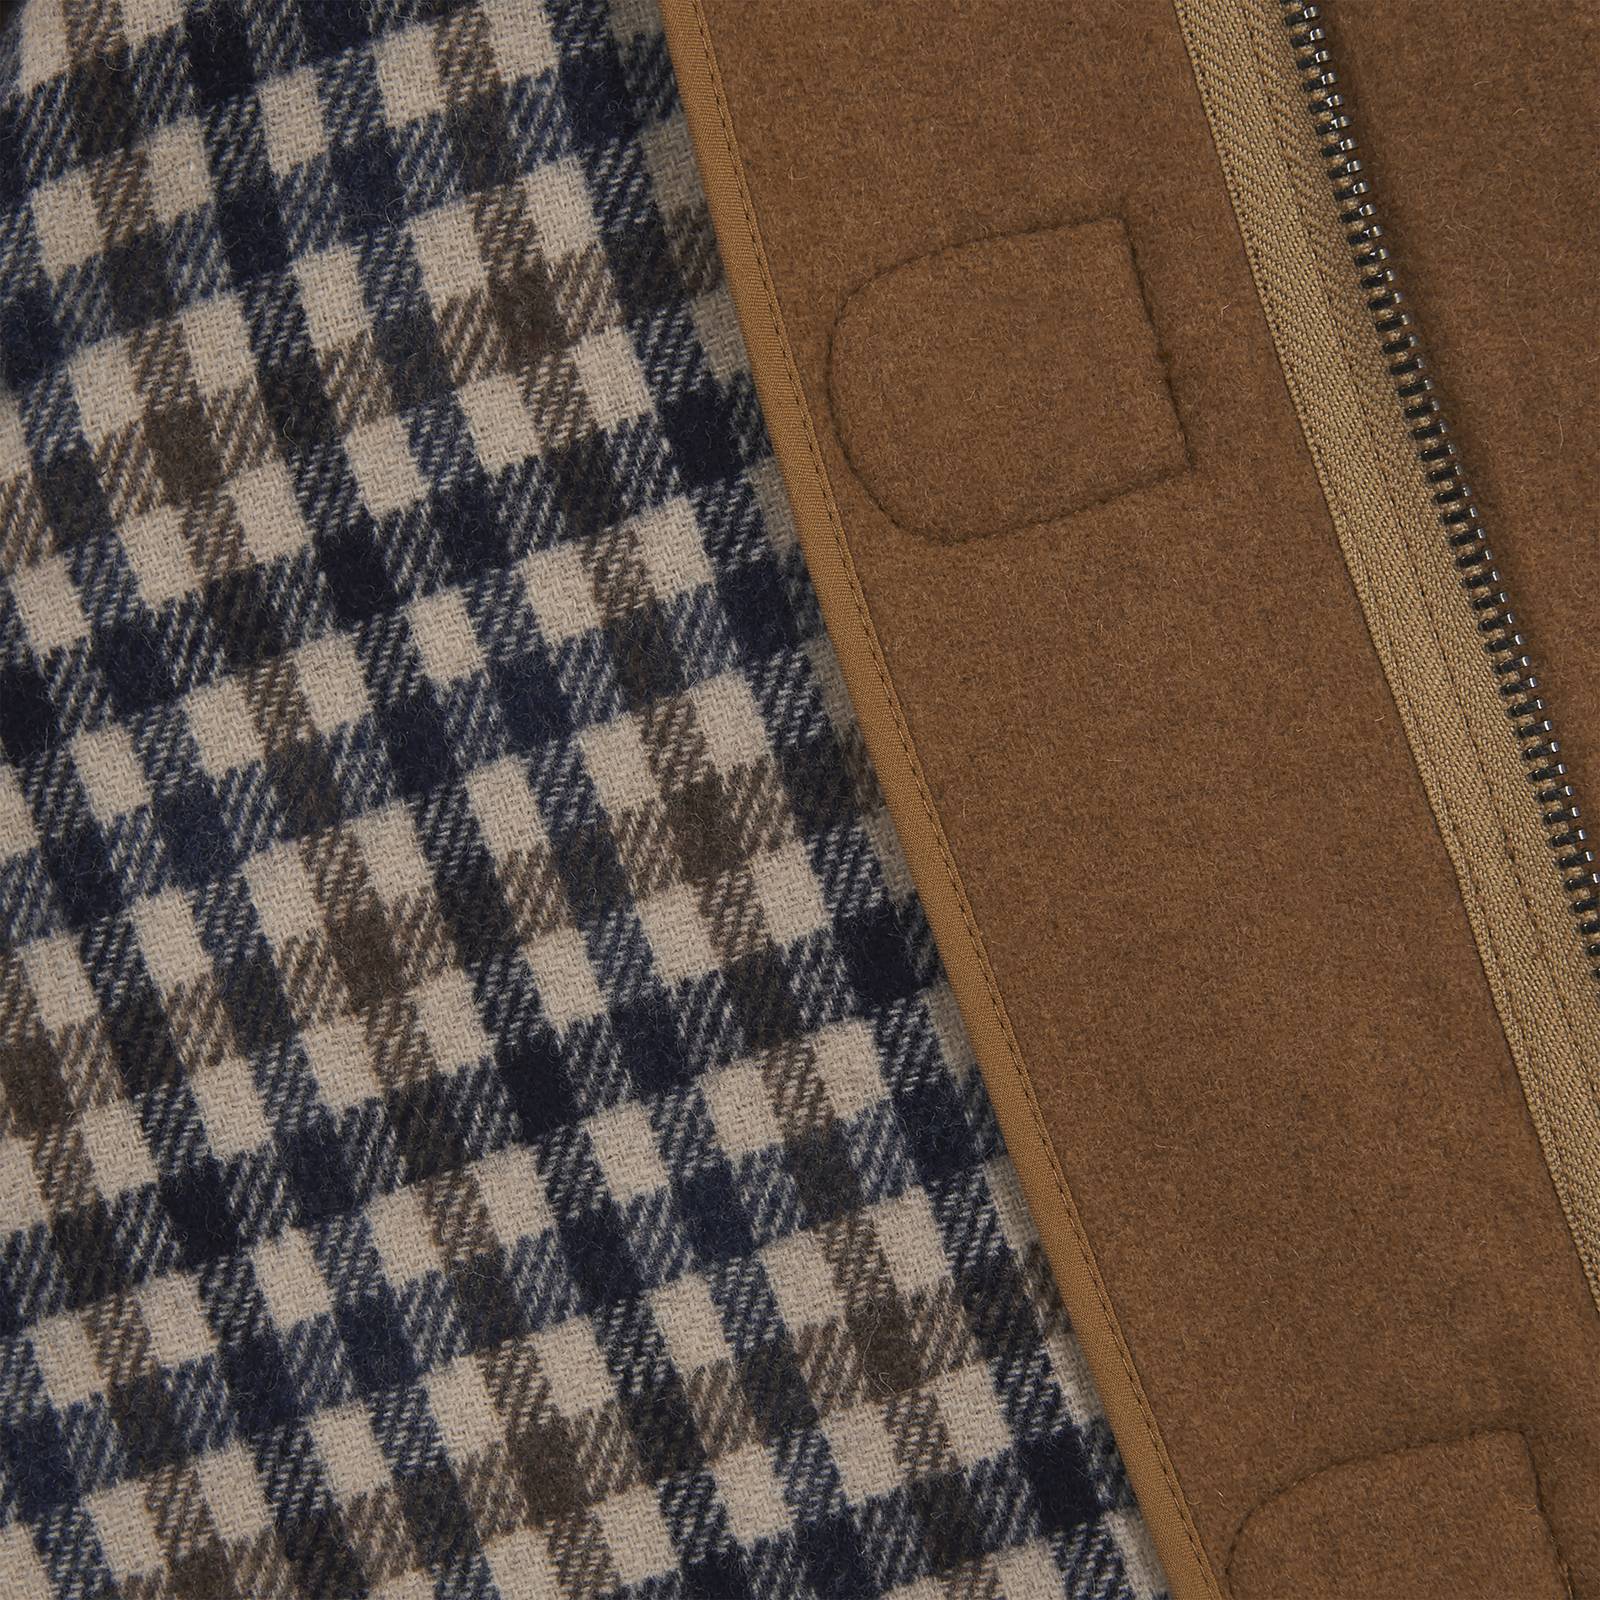 Мужской укороченный дафлкот Renton из полушерстяной ткани бренда MERC, купить на официальном сайте со СКИДКОЙ!